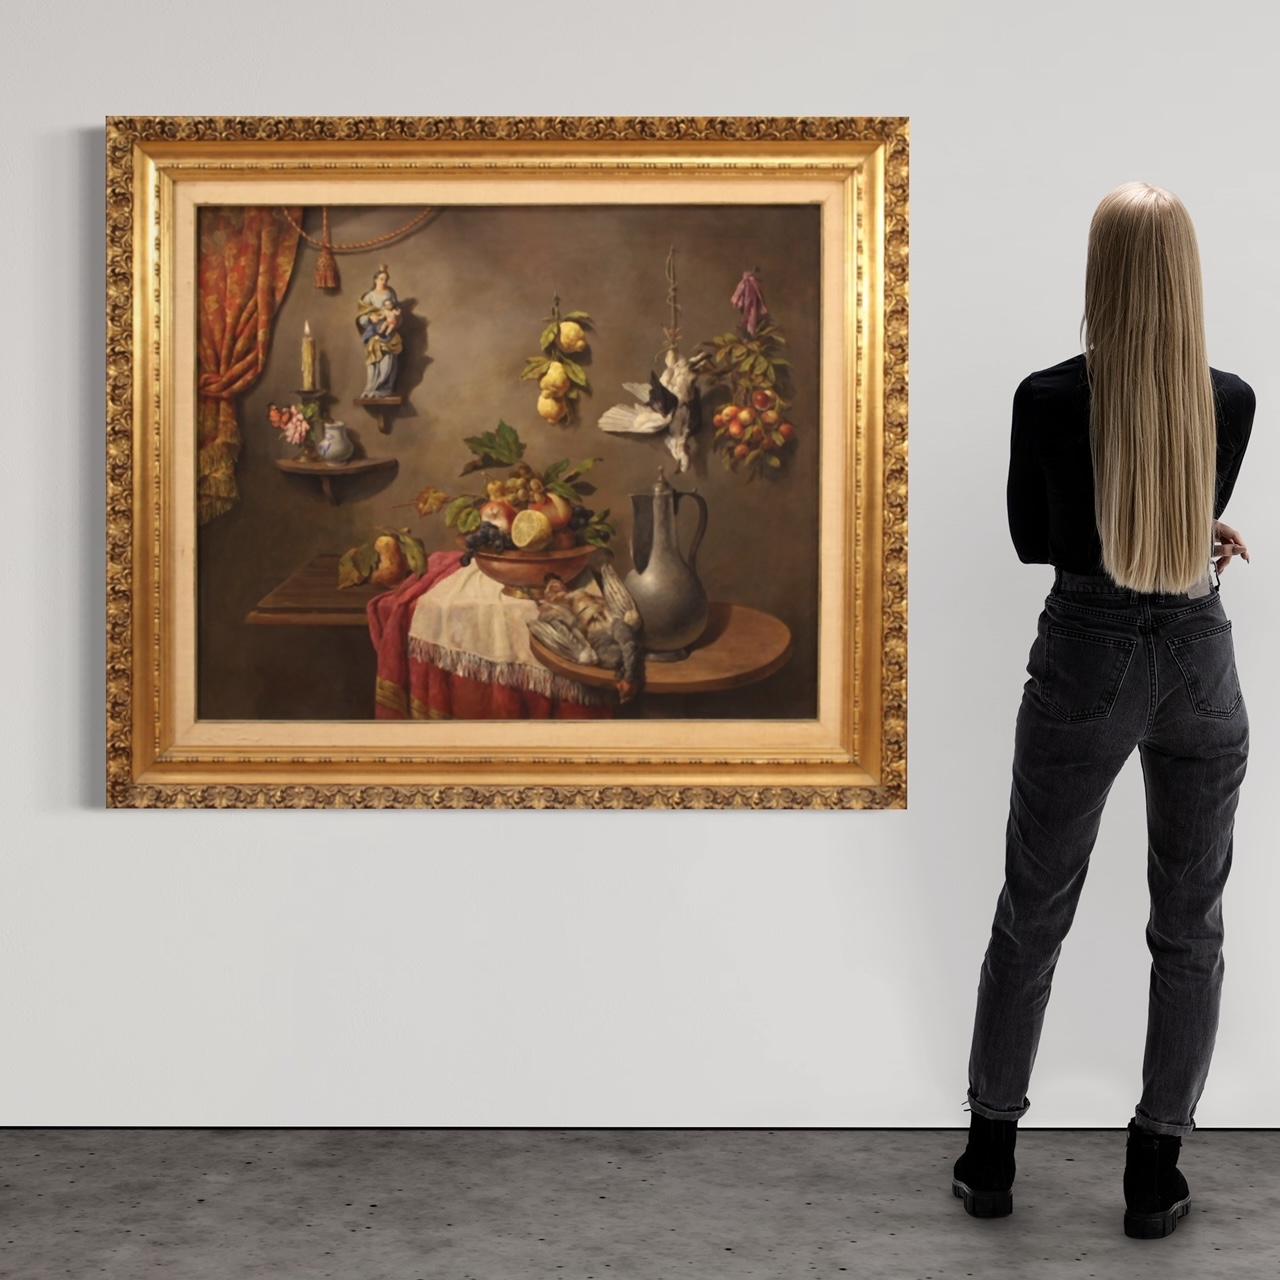 Italienische Malerei aus der Mitte des 20. Jahrhunderts. Öl auf Leinwand, das ein besonderes Trompe-l'Oeil-Stillleben mit Wild, Obst, Keramik und Skulpturen von hervorragender malerischer Qualität darstellt. Gemälde von großem Ausmaß und großer